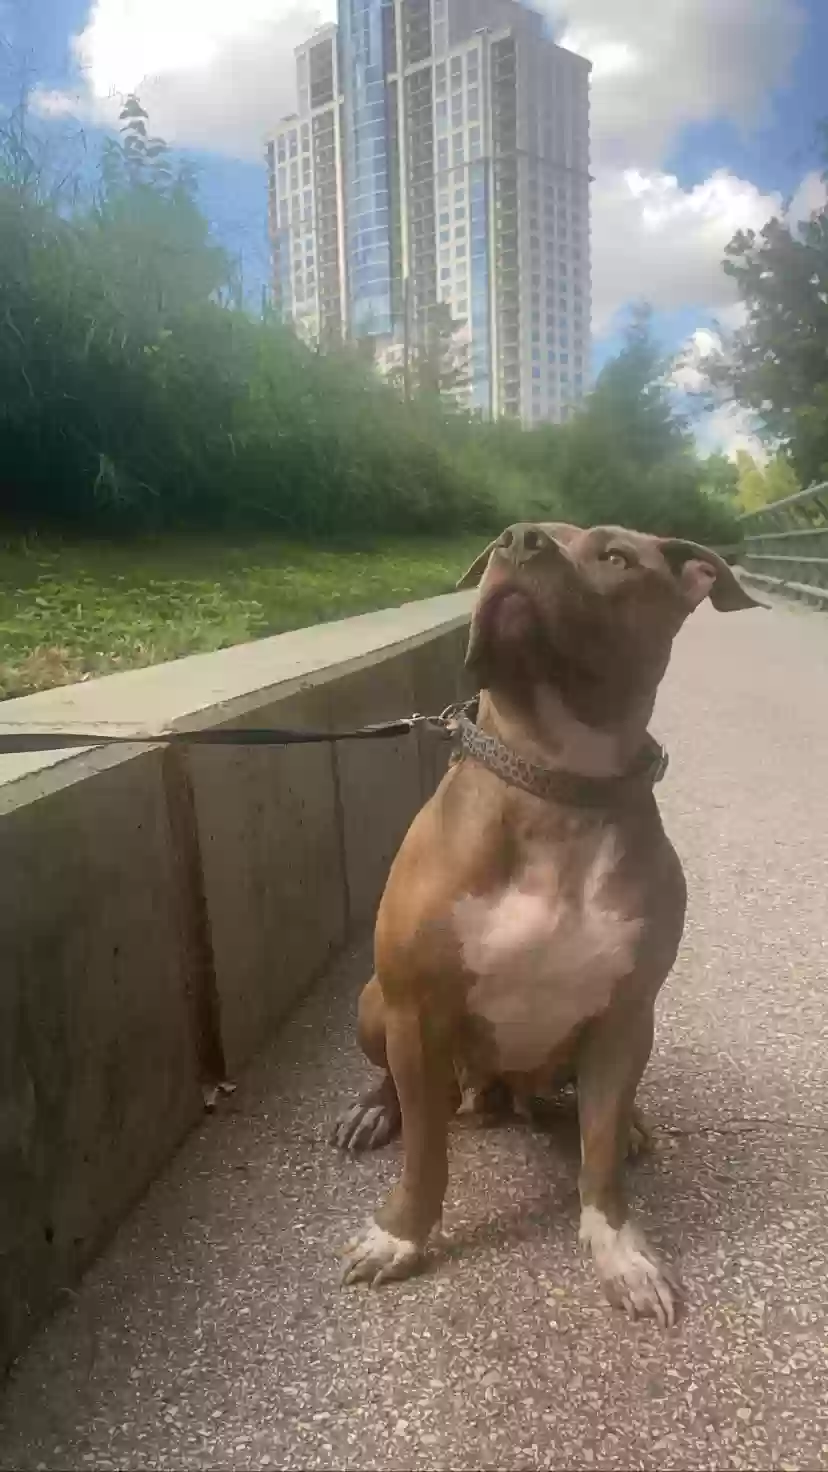 adoptable Dog in Houston,TX named Mulan